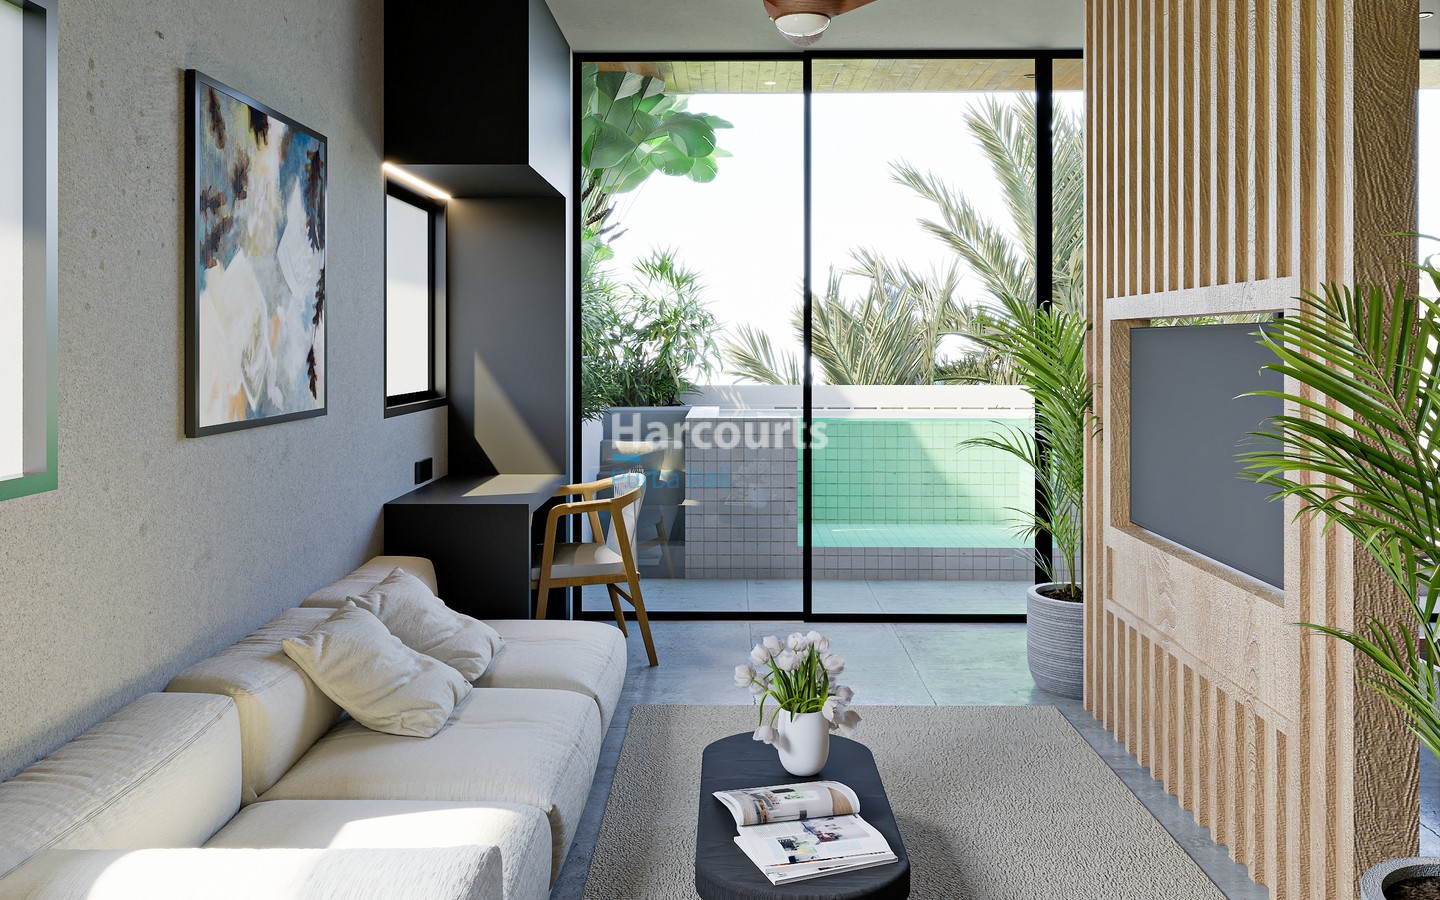 Balangan 1 Bedroom Studio Apartment for Sale in Bali